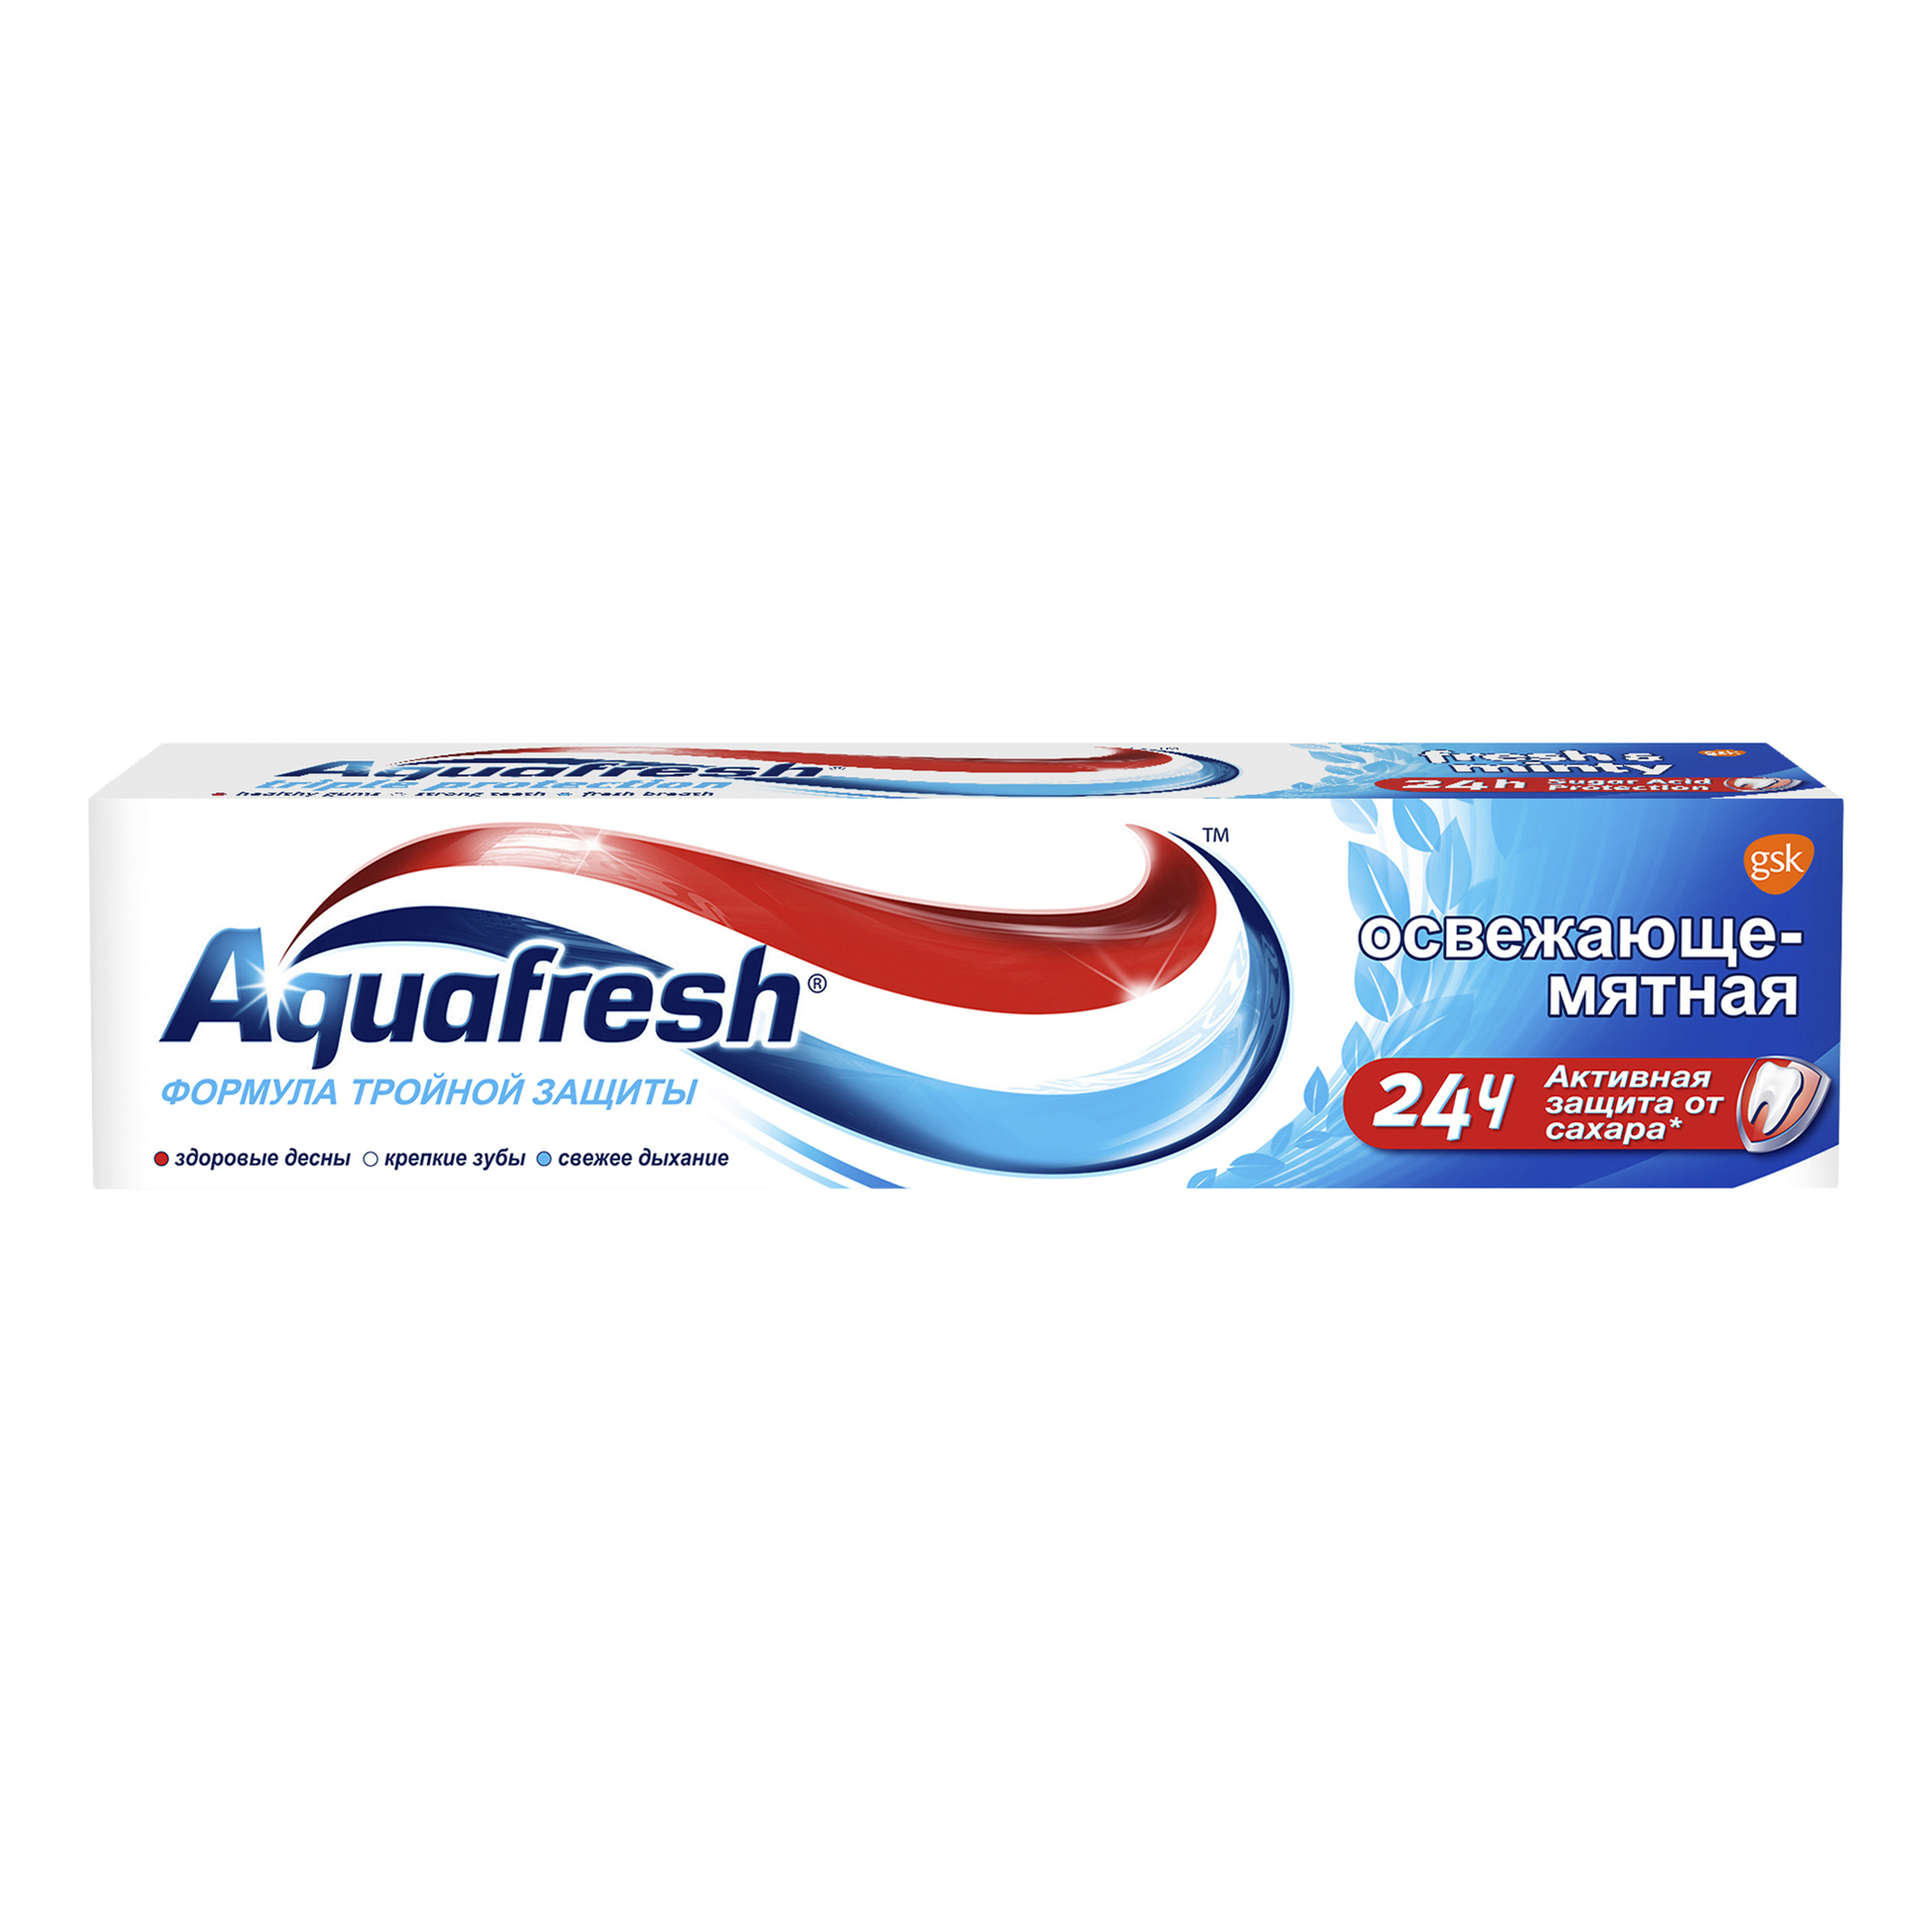 Купить Зубная паста Aquafresh Тройная защита Освежающе-мятная 100 мл